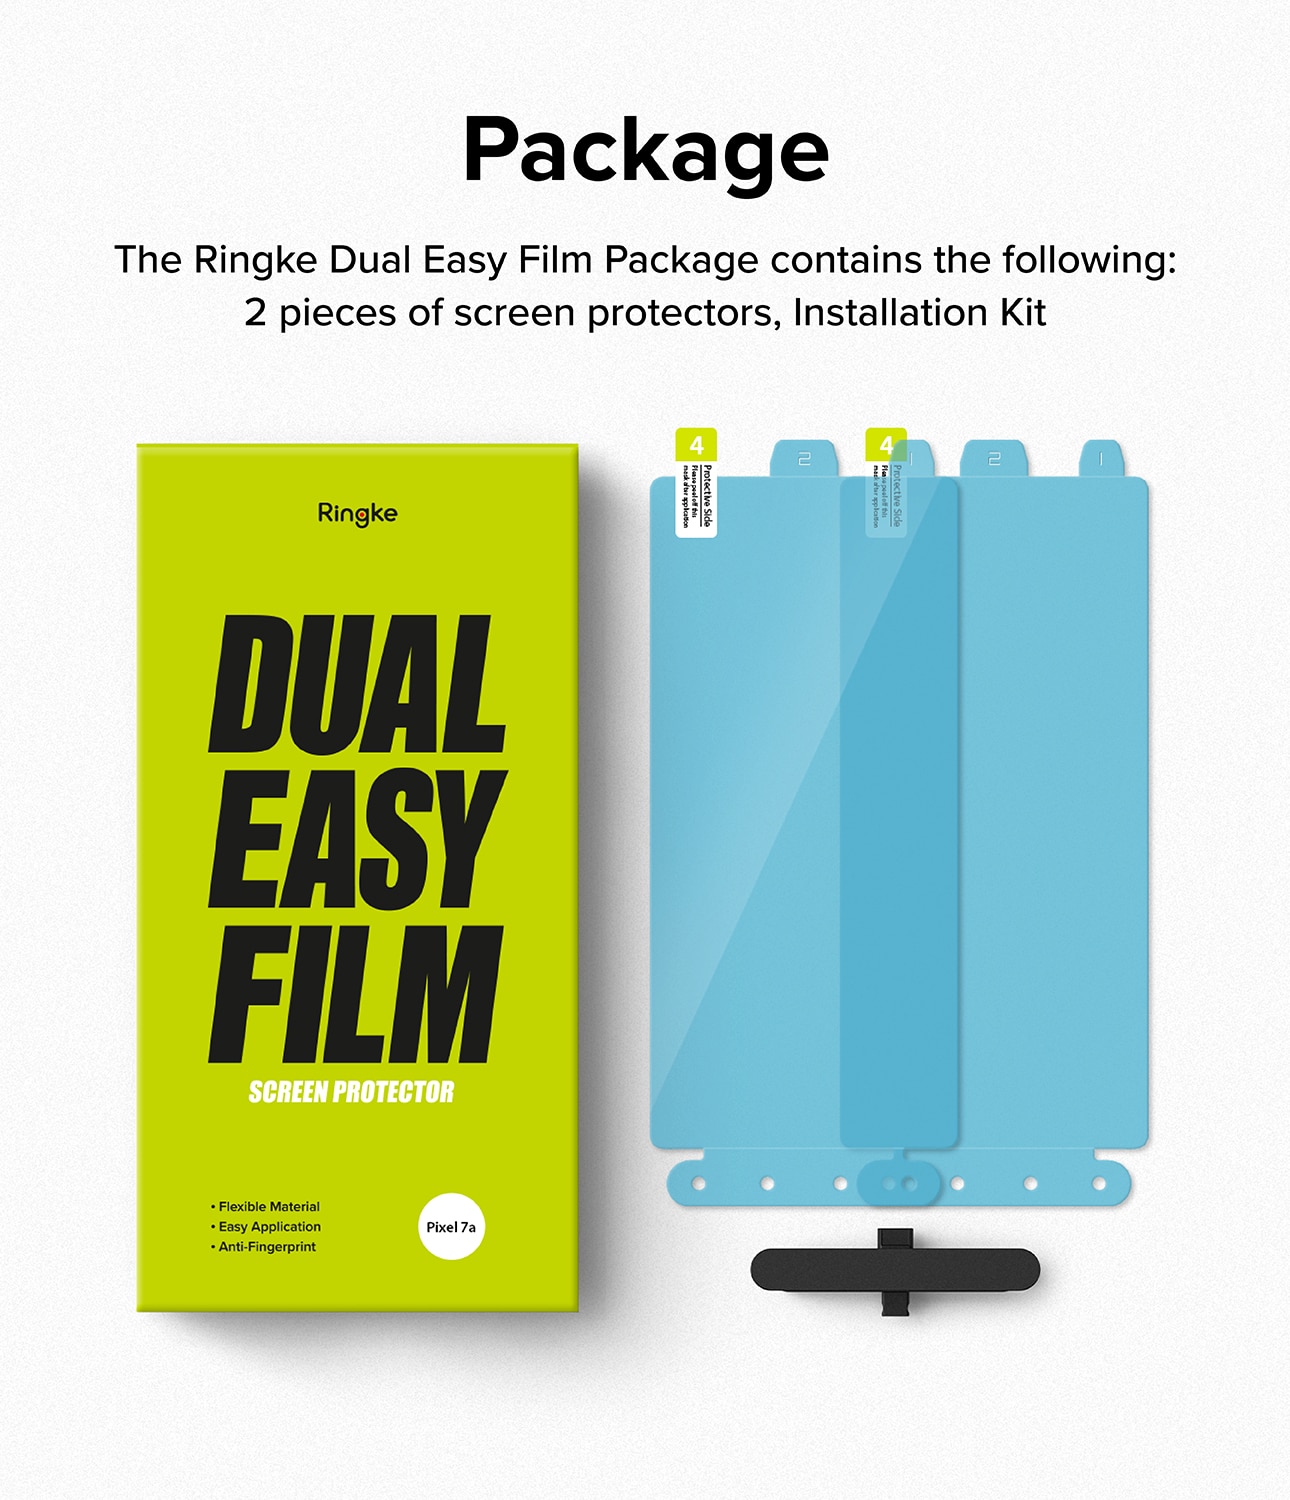 Google Pixel 7a Skärmskydd skyddsfilm - Dual Easy (2-pack)